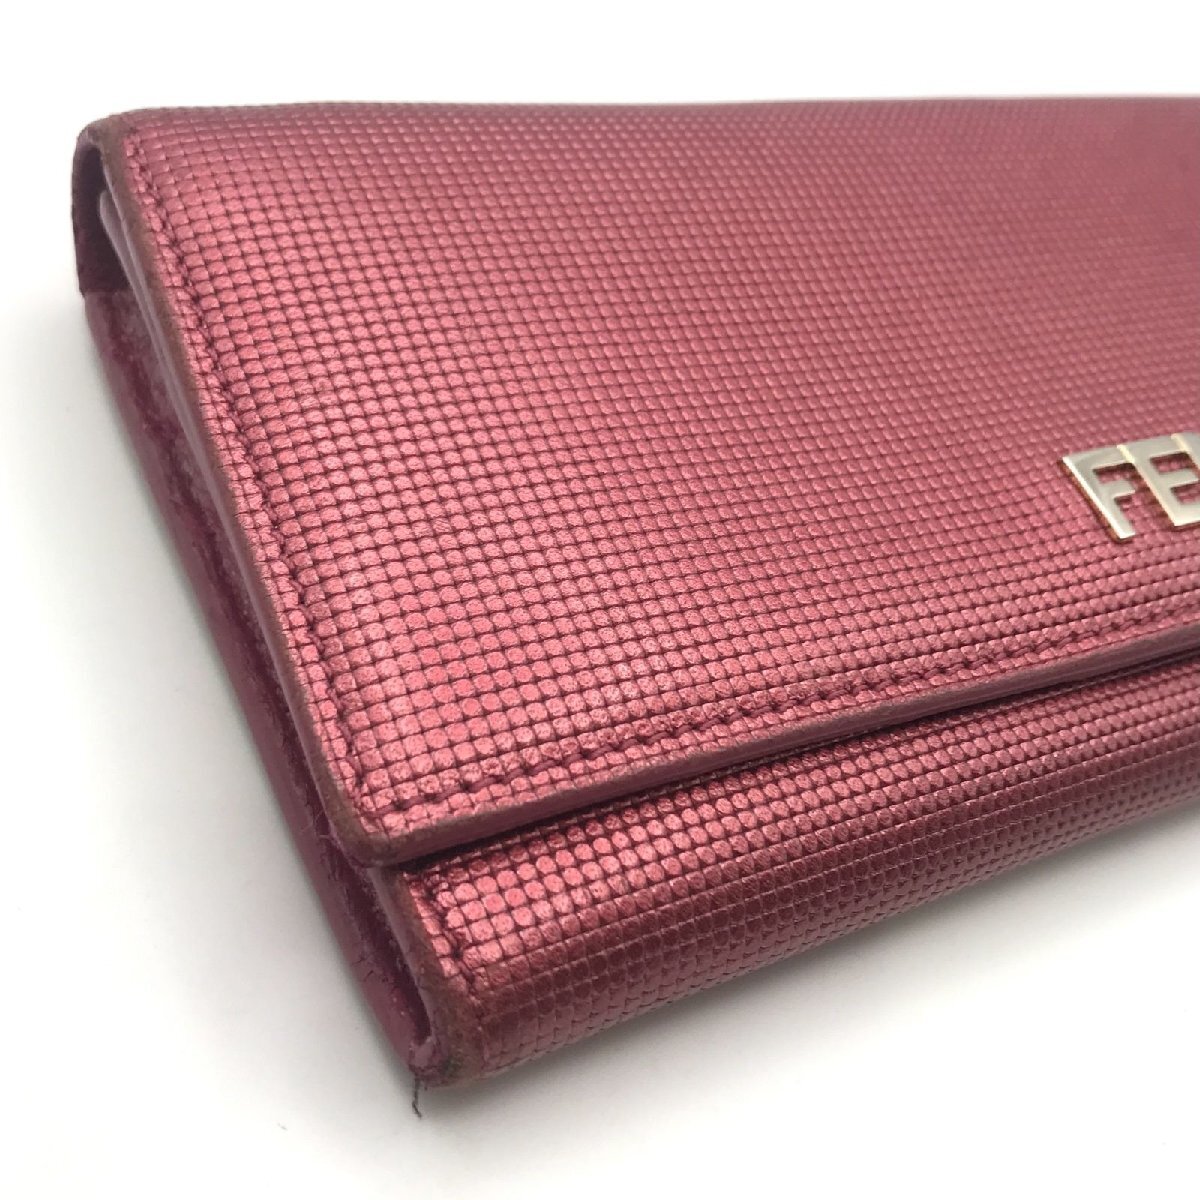 良品 FENDI フェンディ ロゴ レザー 二つ折り 長財布 ウォレット ピンク a2057